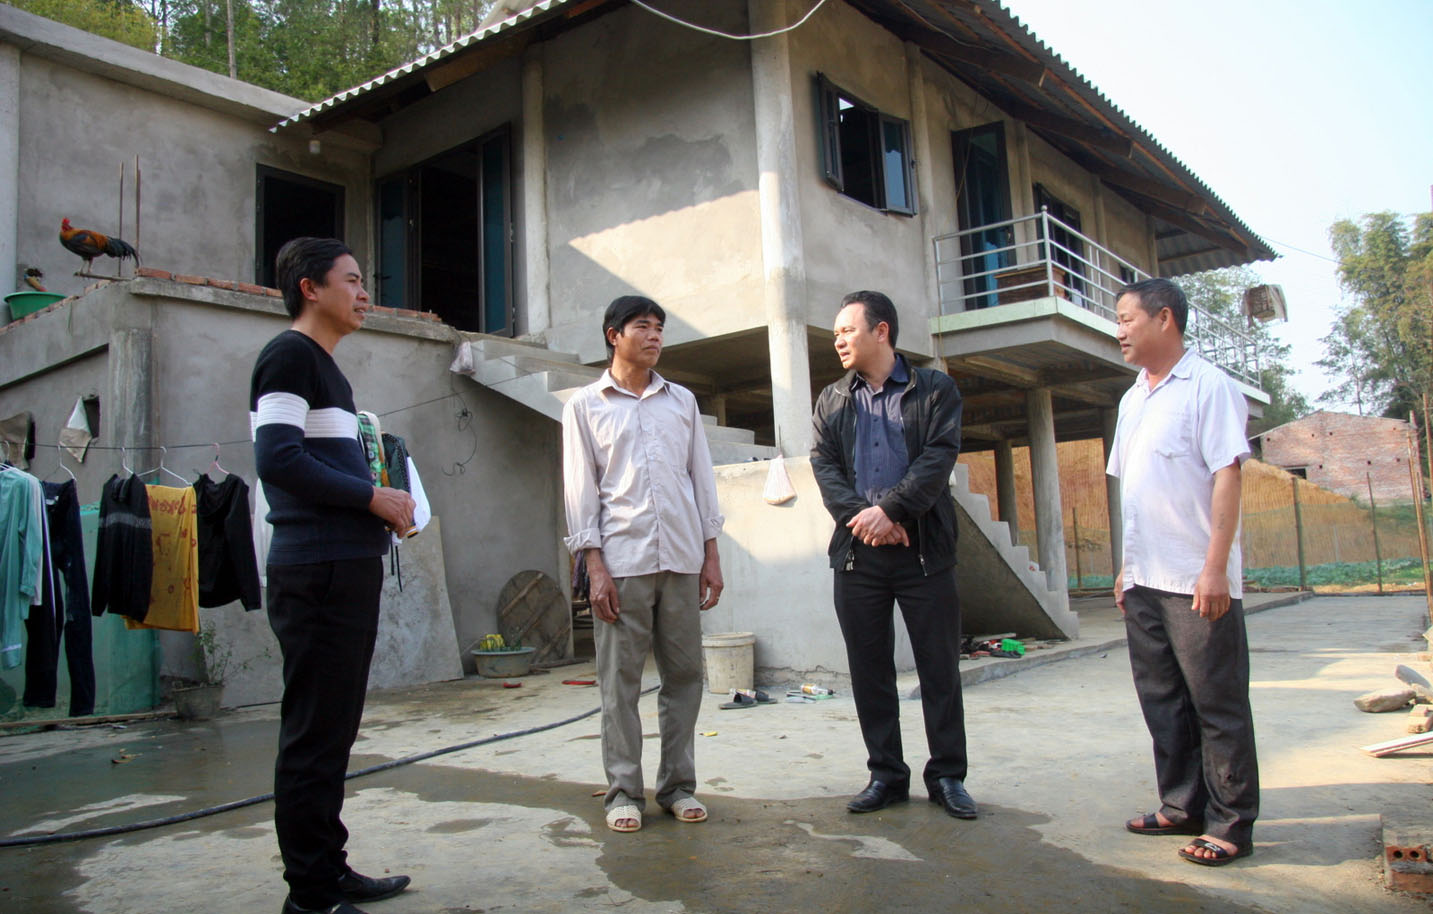 Cấp ủy chính quyền xã Mường Than (huyện Than Uyên) thăm và trò chuyện với ông Cầm Văn Yên bên ngôi nhà mới ở bản Lằn Giẳng.